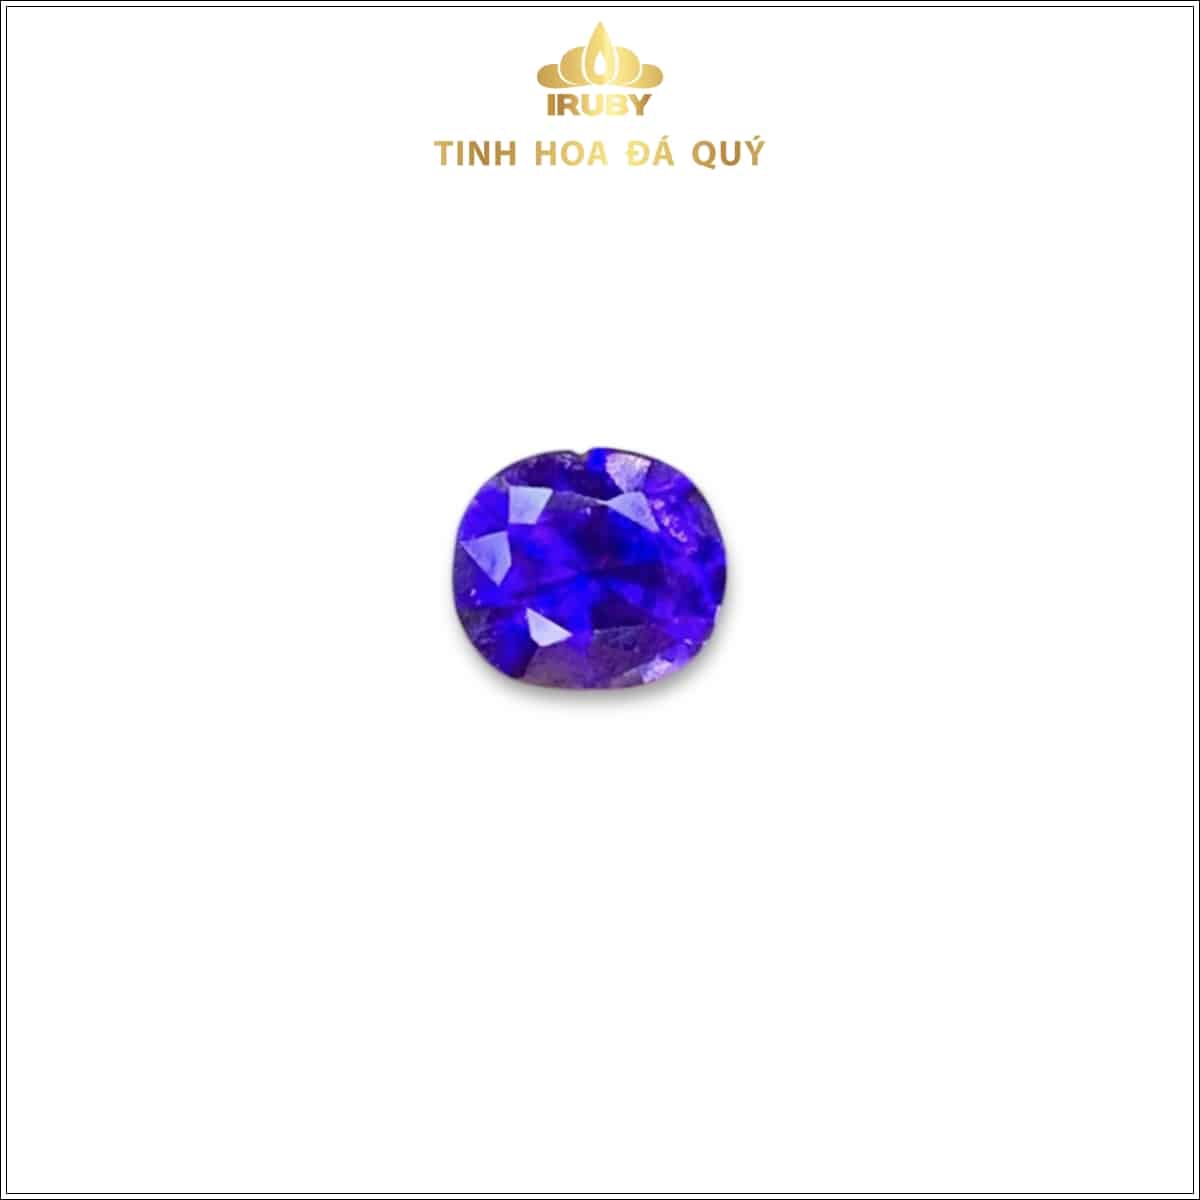 Viên Sapphire màu xanh lam hoàng gia 0,36ct - IRSP 235036